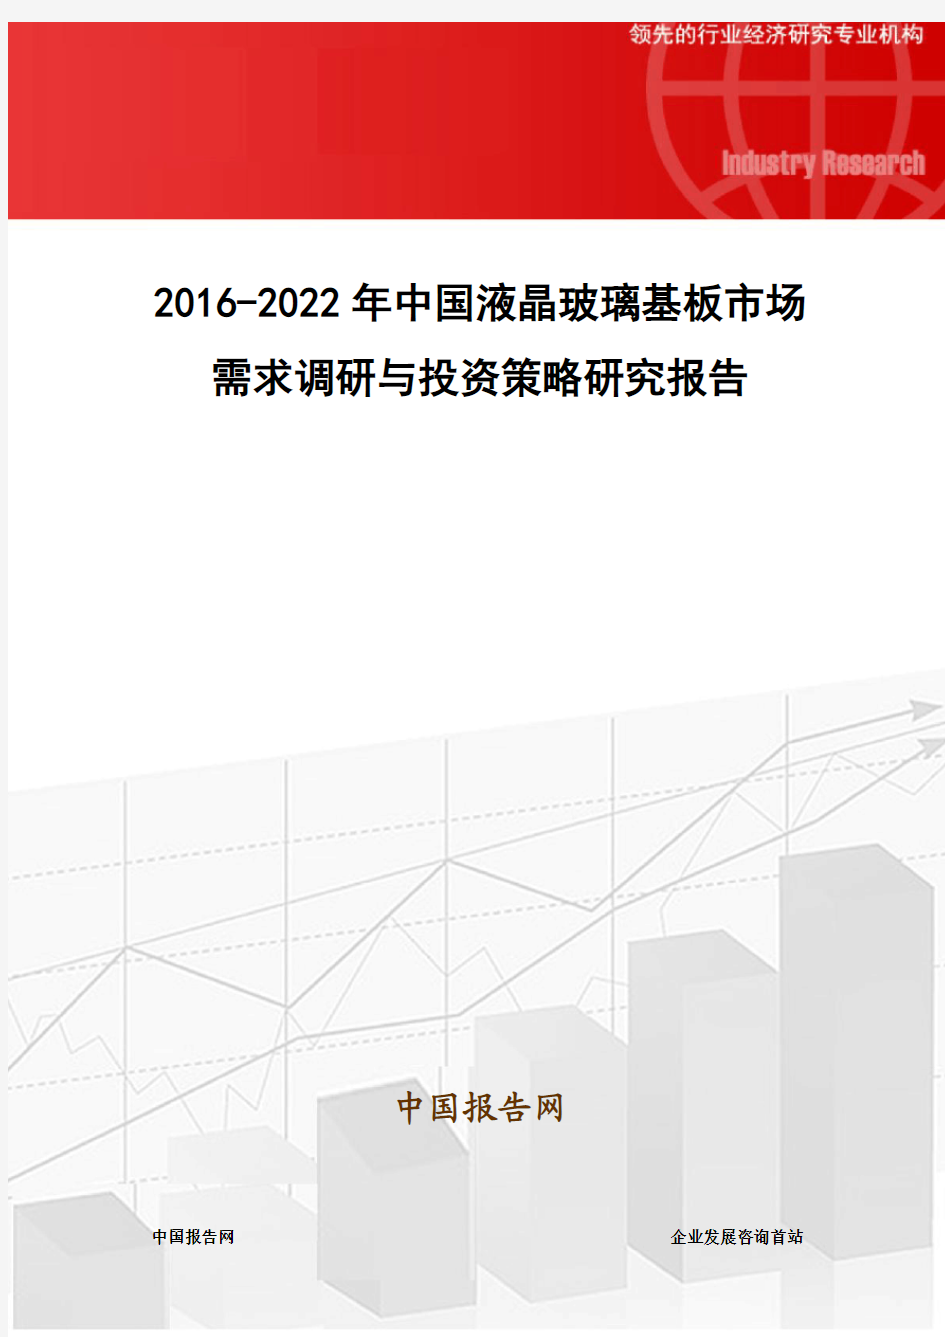 2016-2022年中国液晶玻璃基板市场需求调研与投资策略研究报告